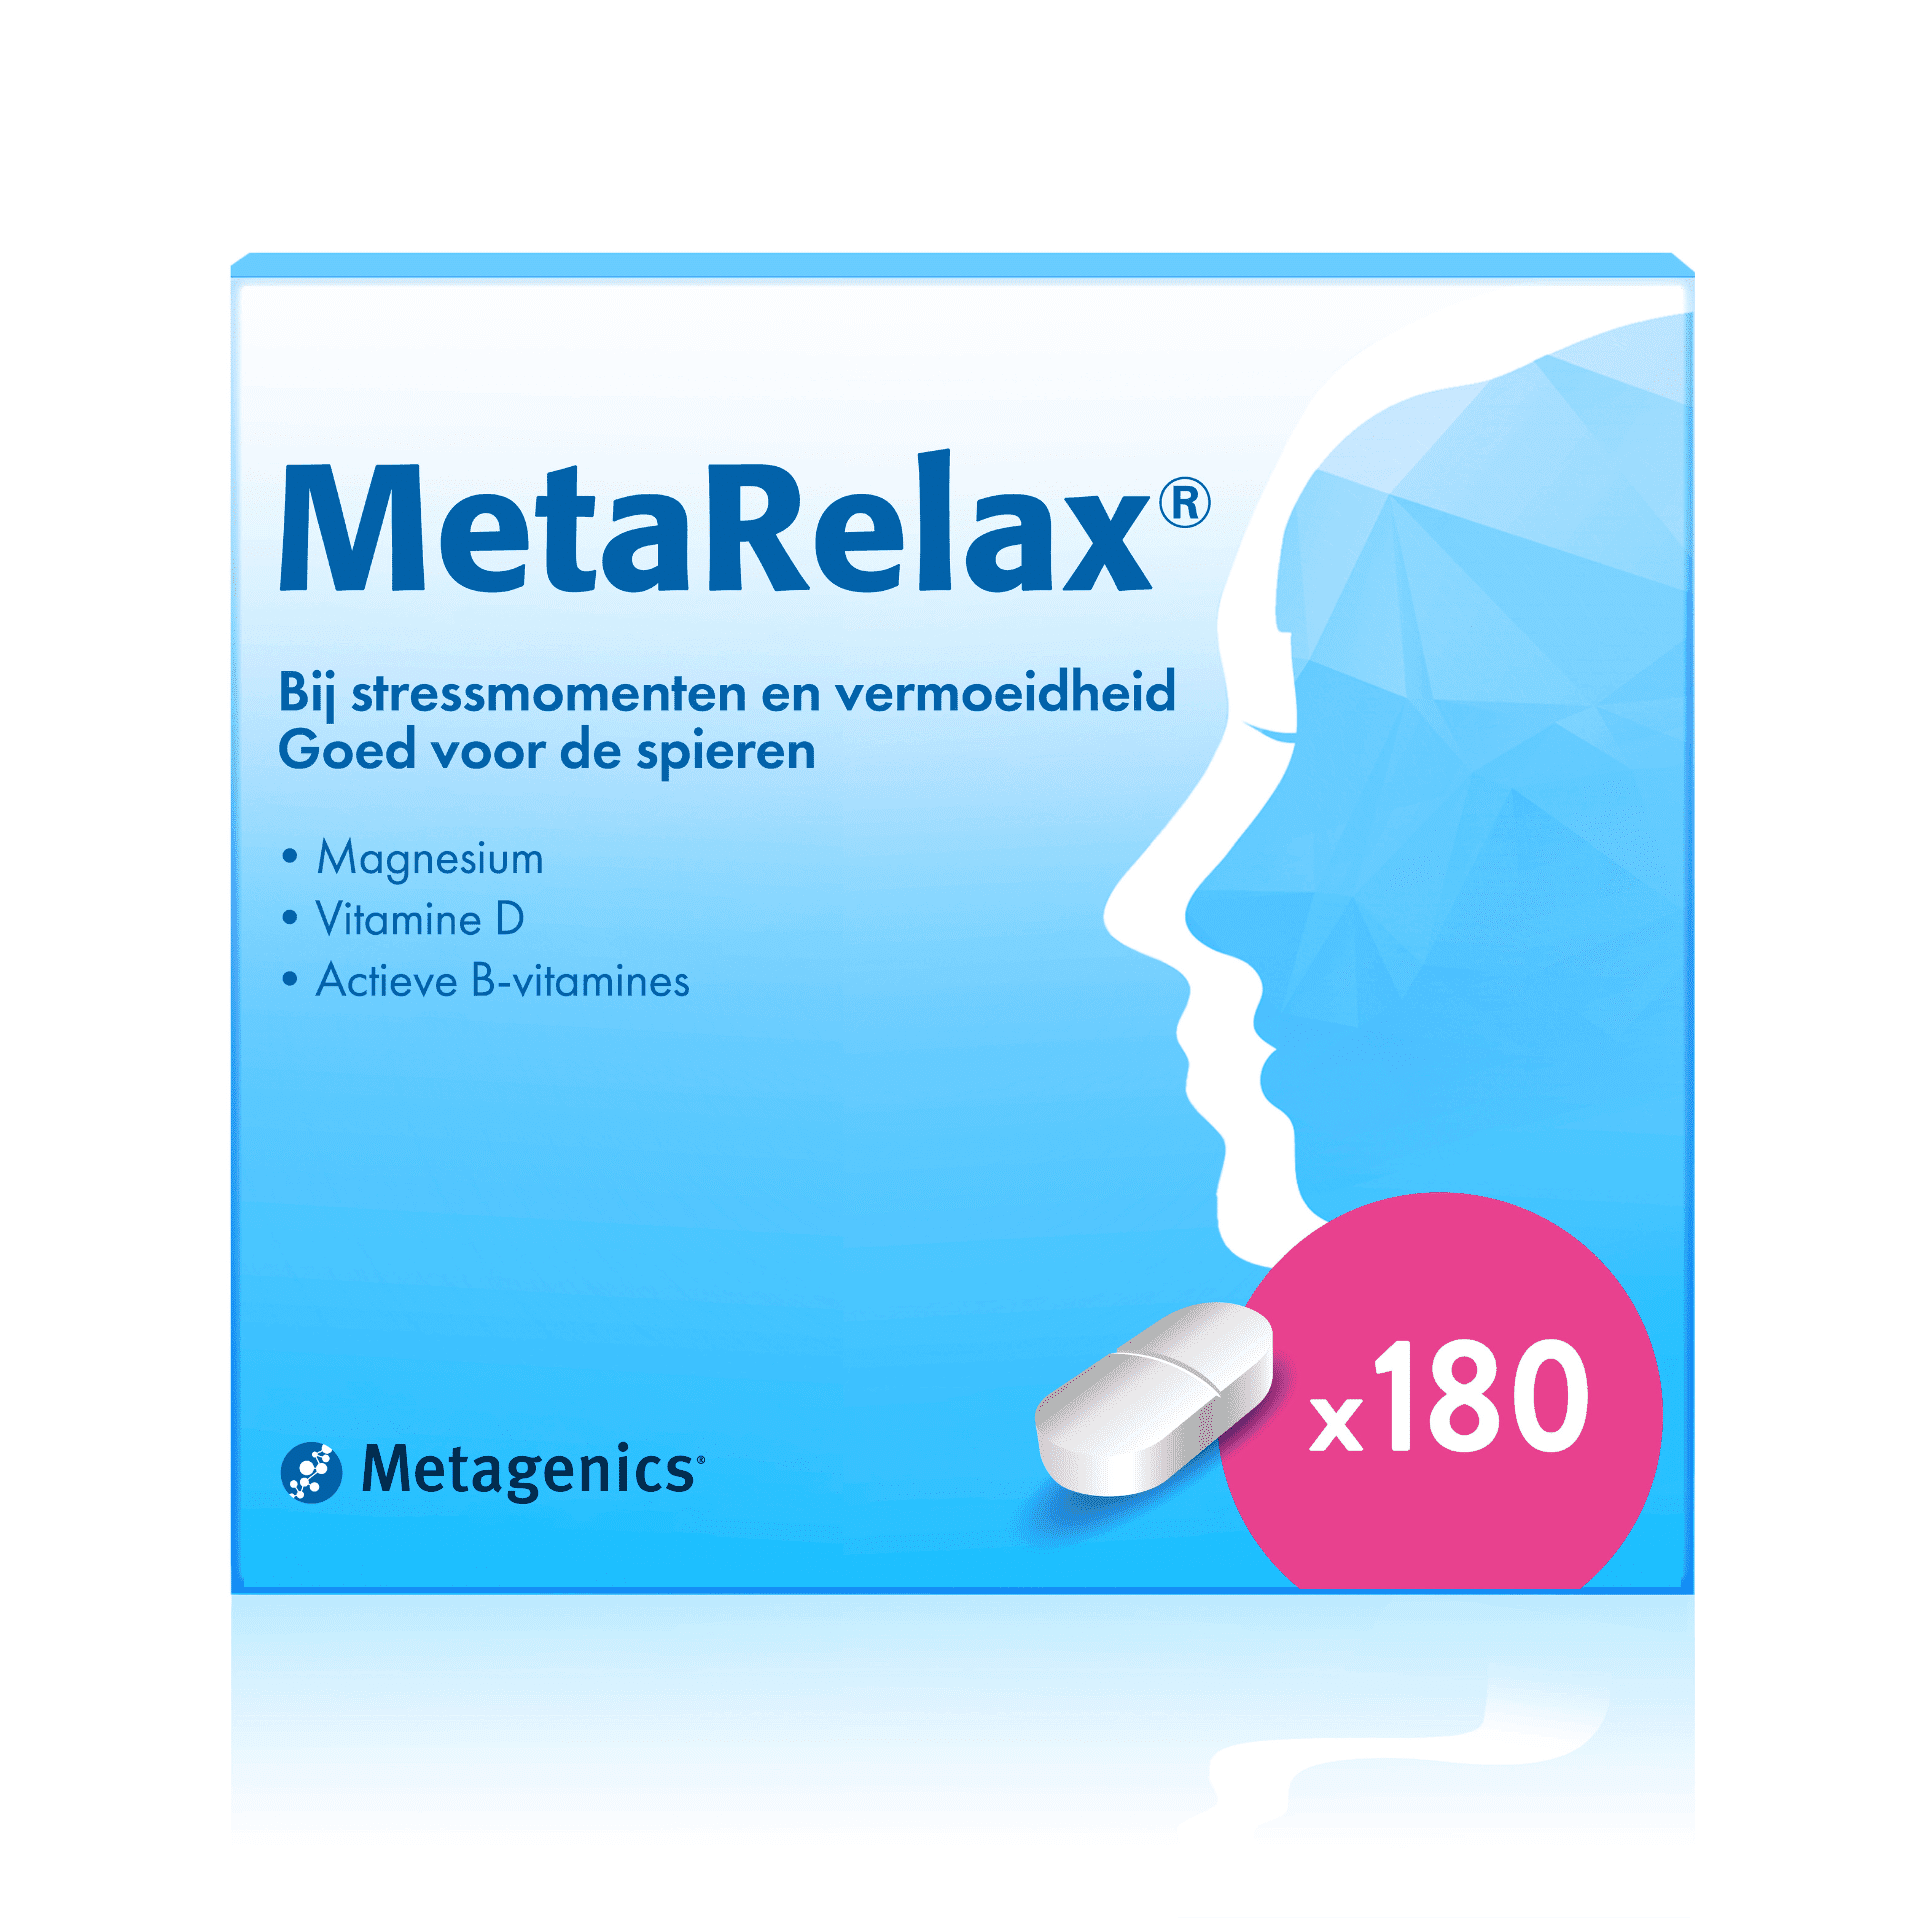 MetaRelax